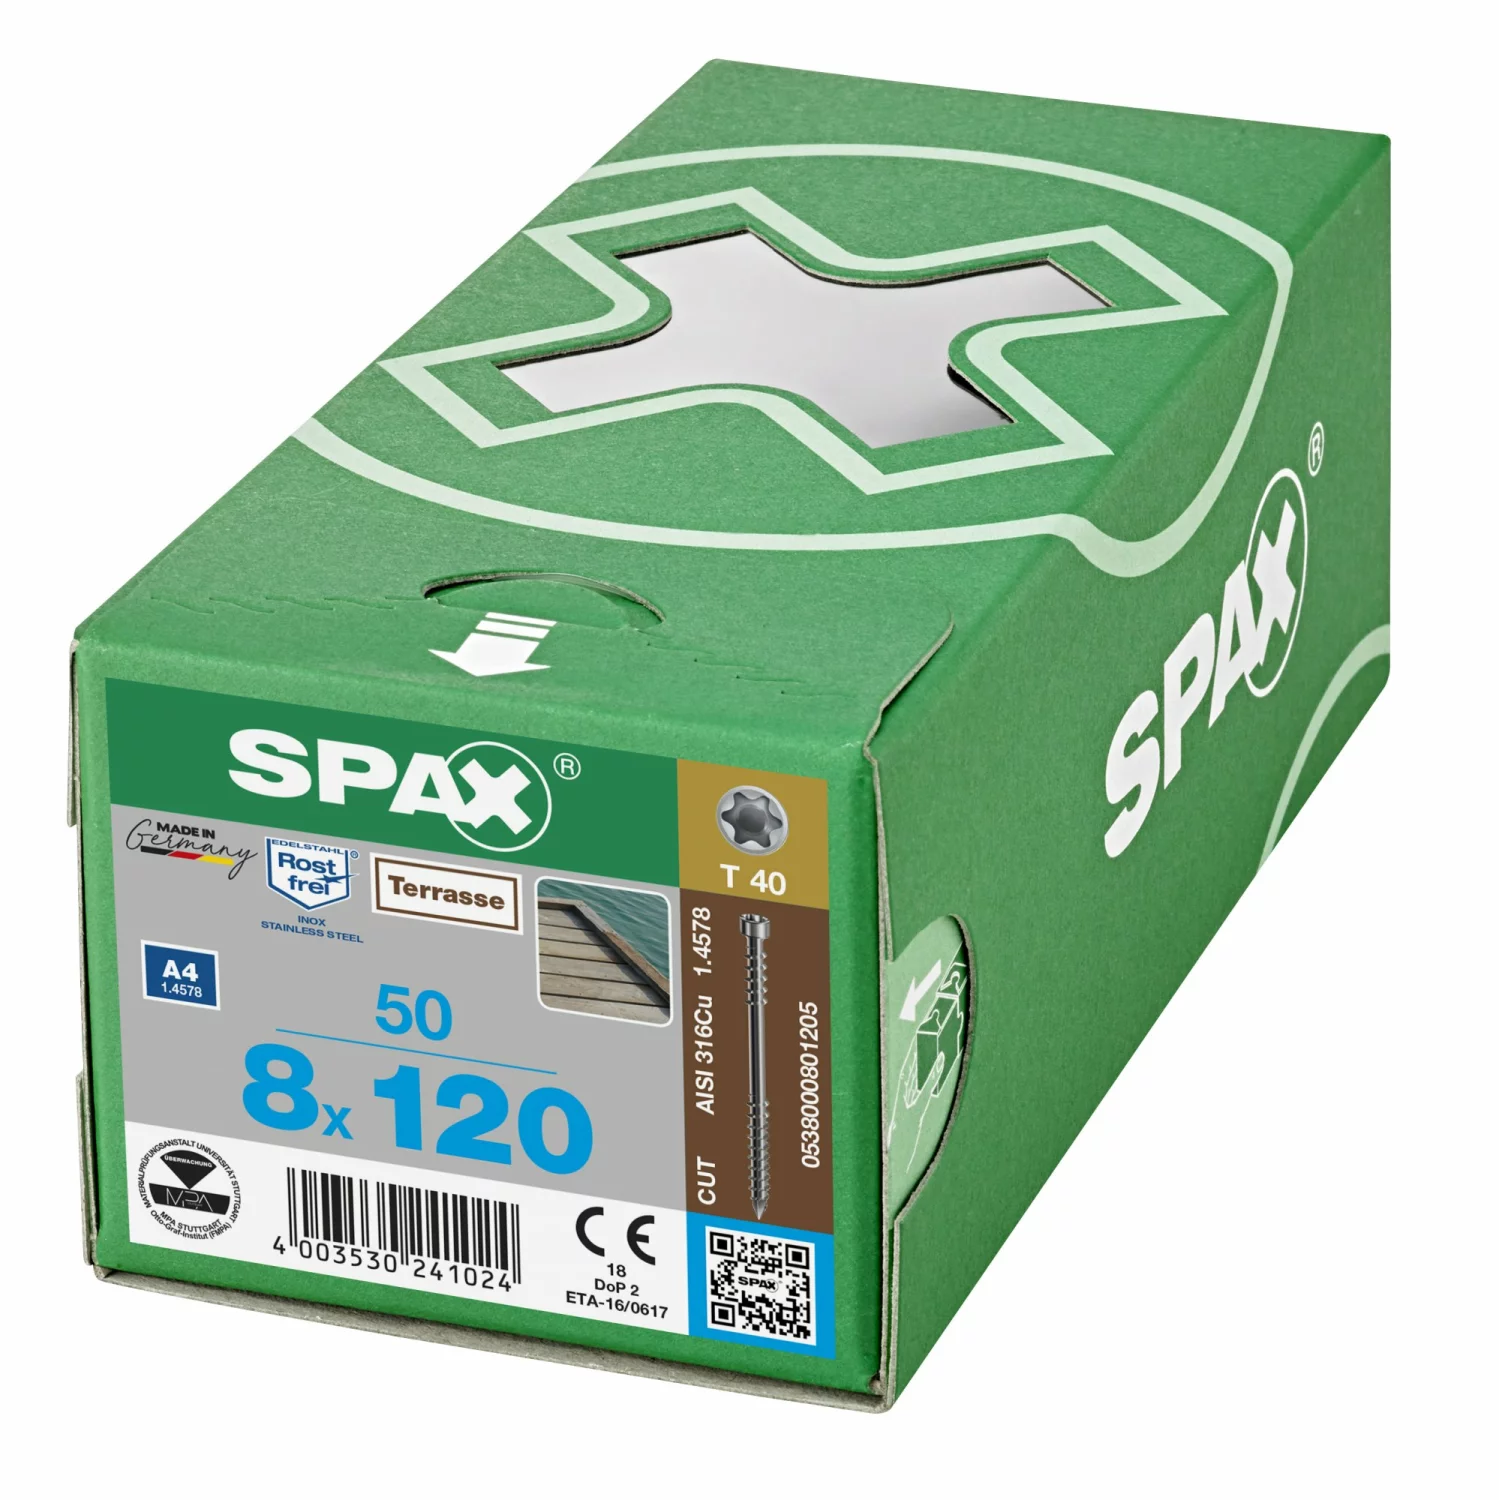 SPAX 538000801205 Vlonderschroef, Cilinderkop, 8 x 120, Fixeerschroefdraad, T-STAR plus TX25 - blank - 50 stuks